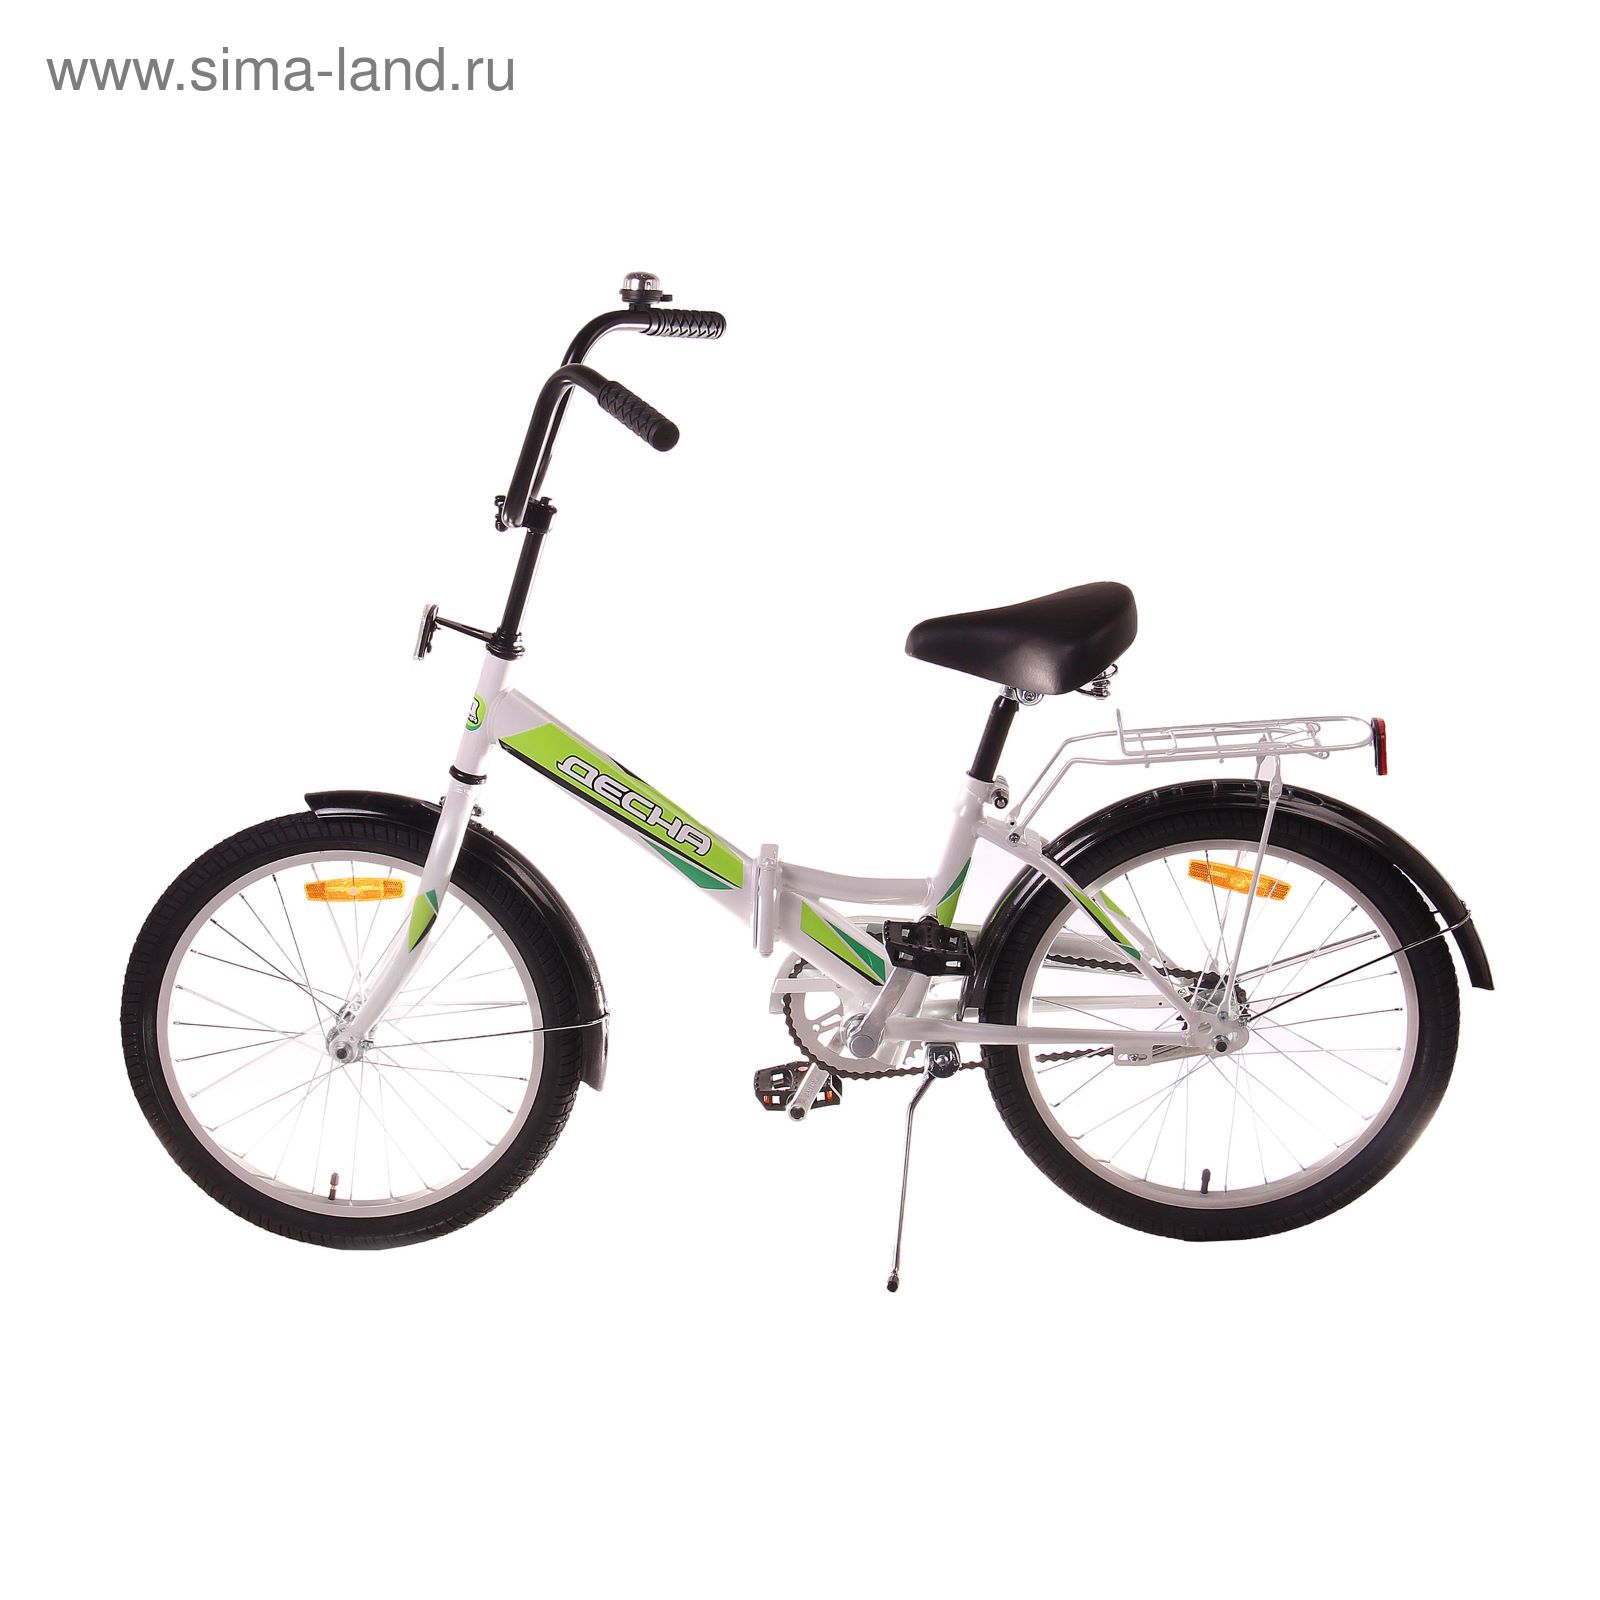 Велосипед 20" Десна-2100 Z010, 2017, цвет белый, размер 12"